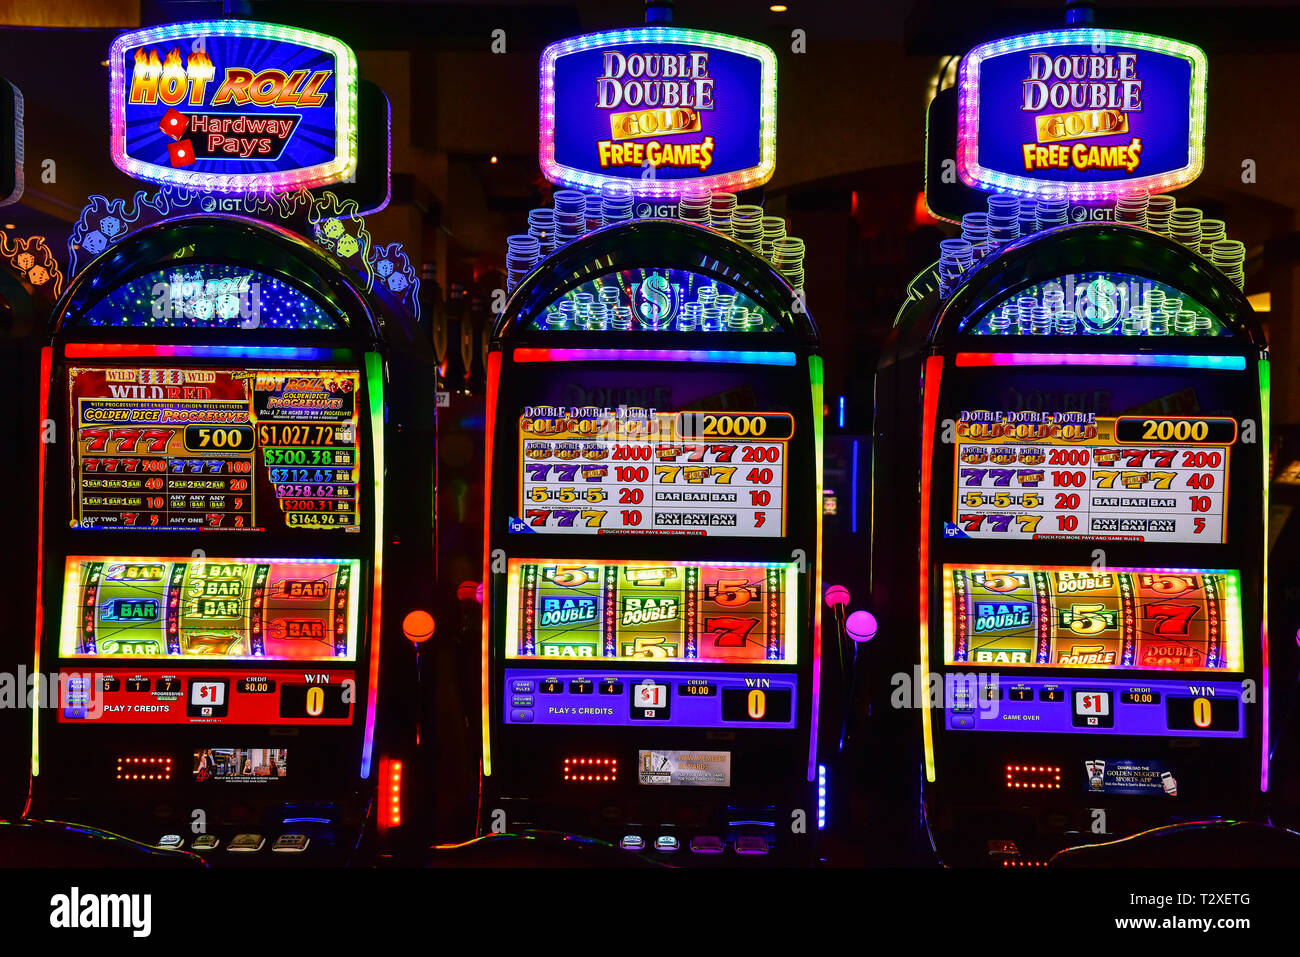 die ganze wahrheit über online-casinos - Was tun bei Ablehnung